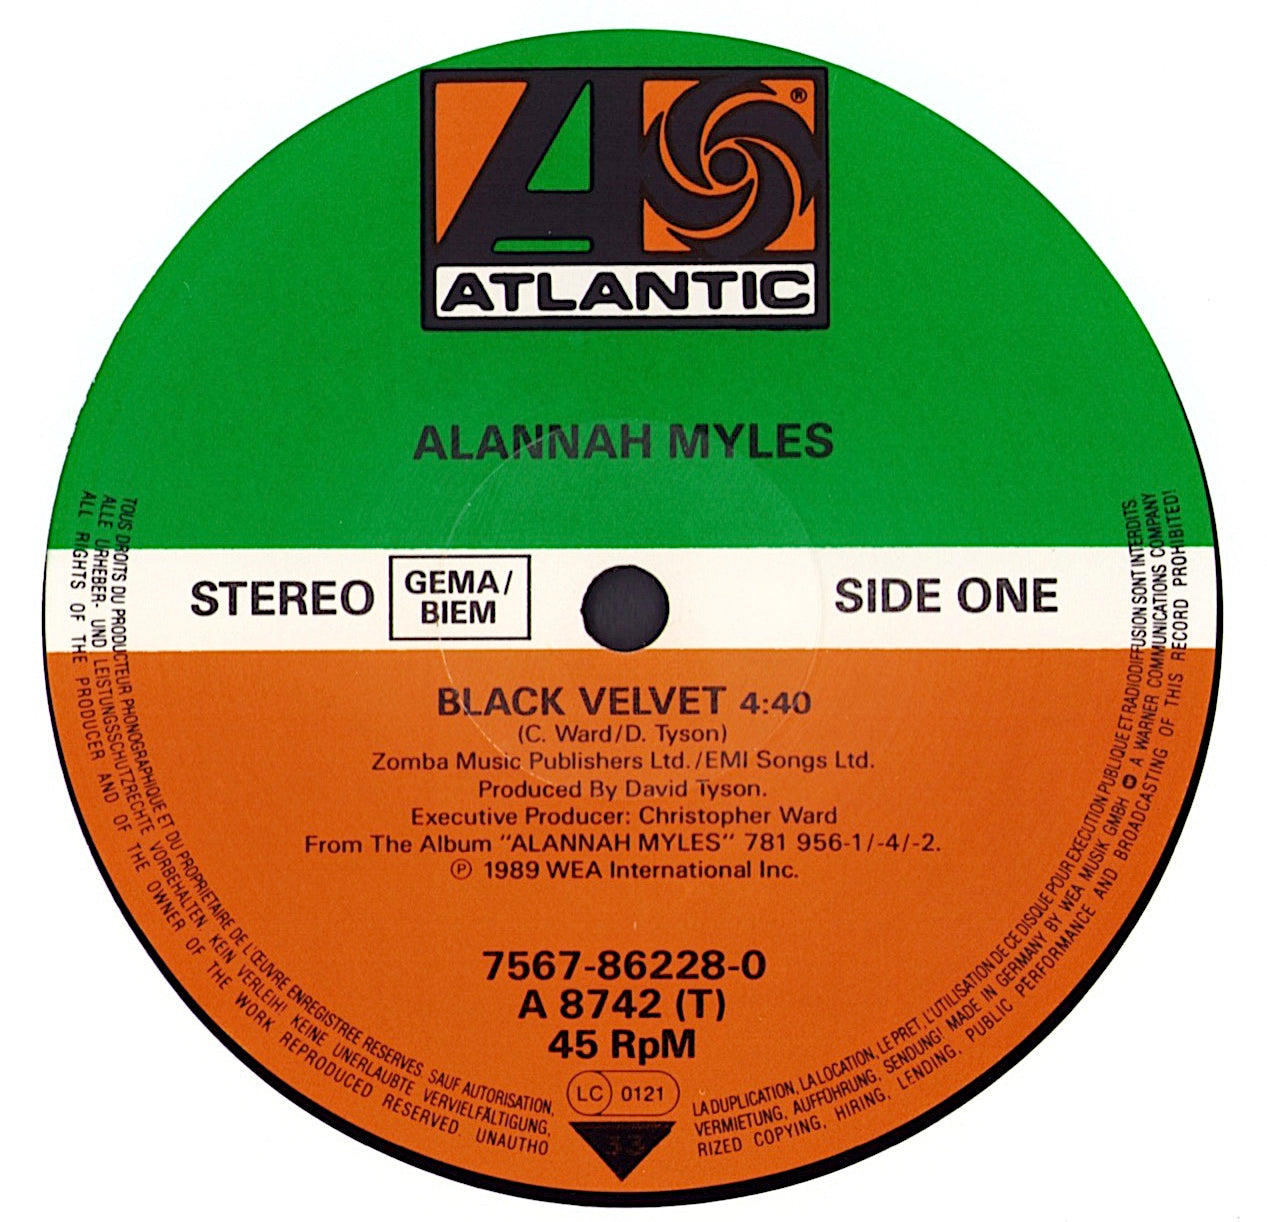 Alannah Myles - Black Velvet Vinyl 12" Maxi-Single